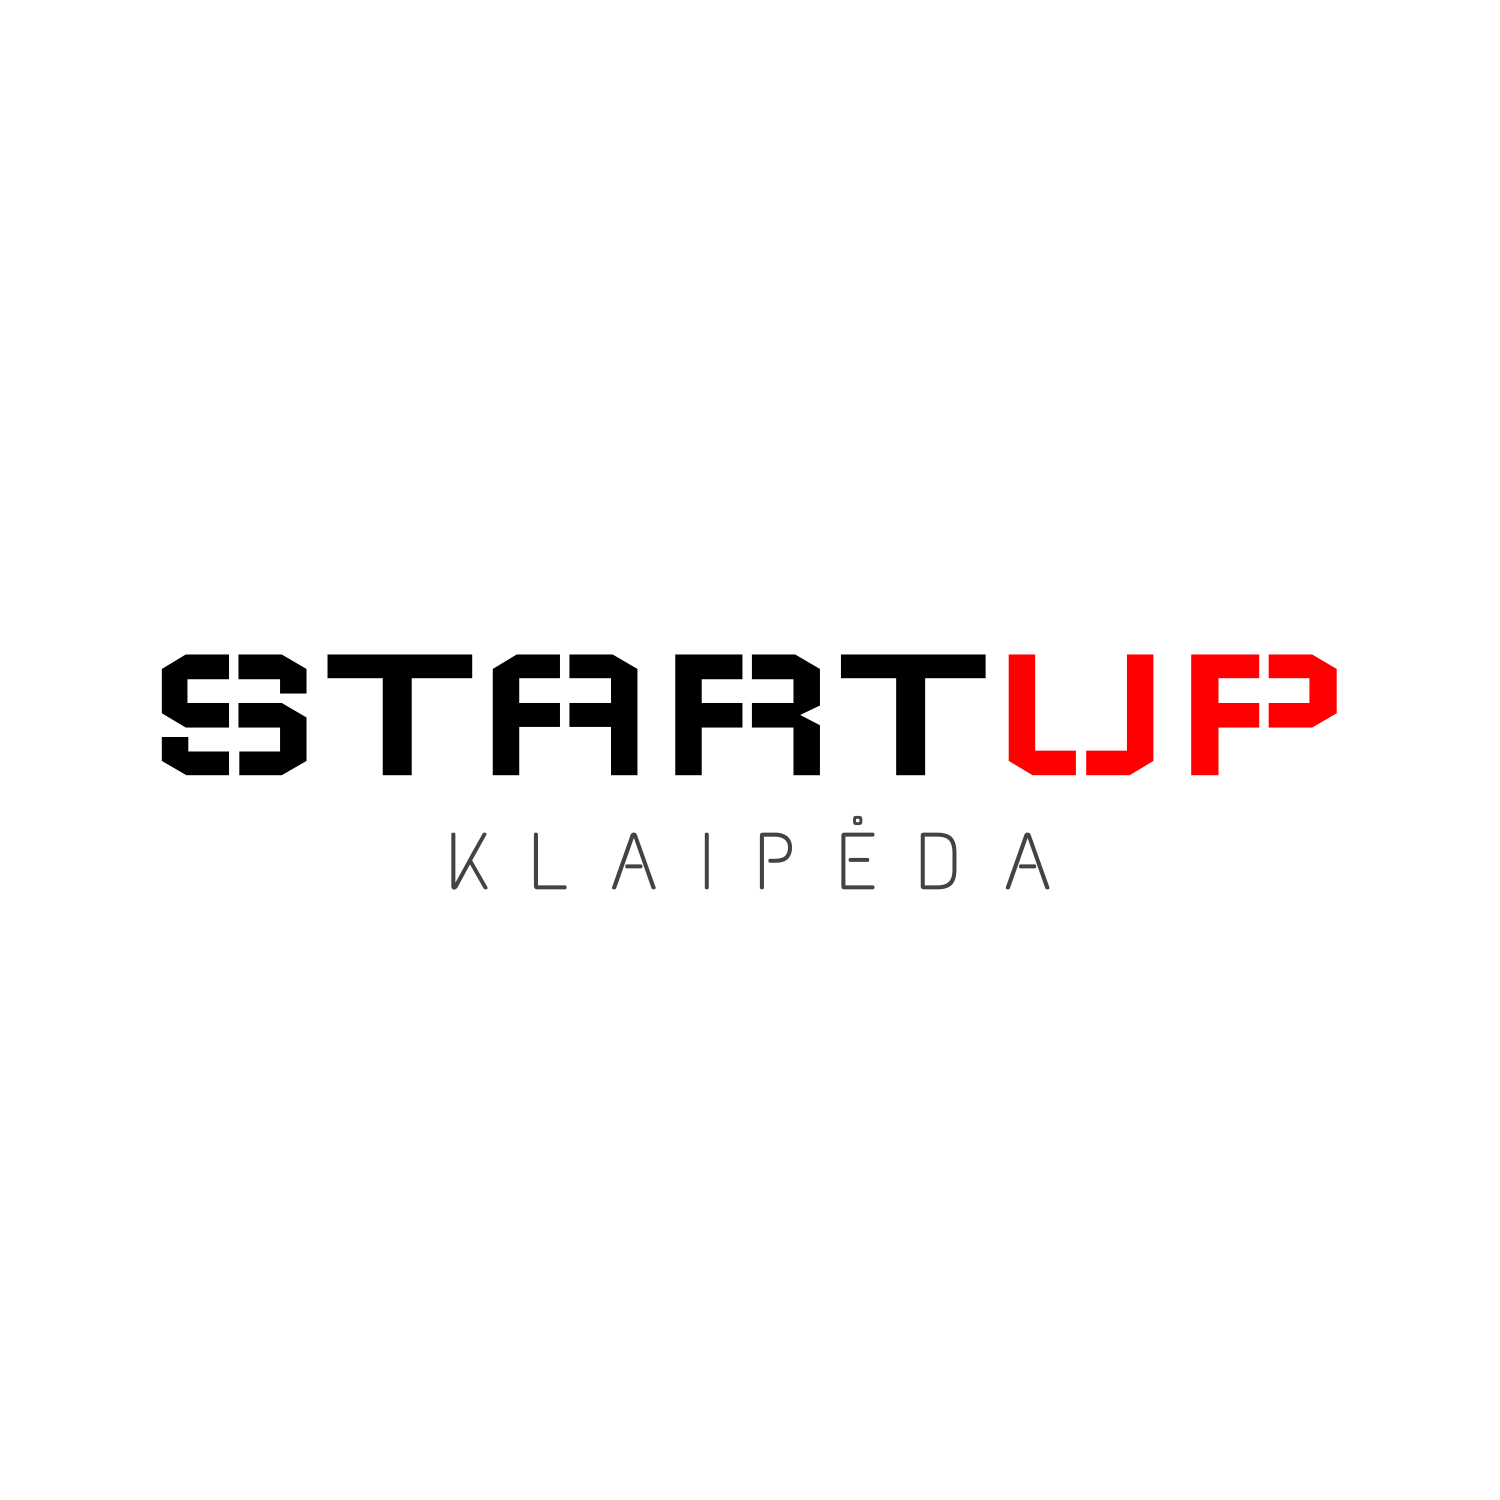 Logotipų kūrimas, logotipo dizainas verslui, Startup Klaipėda